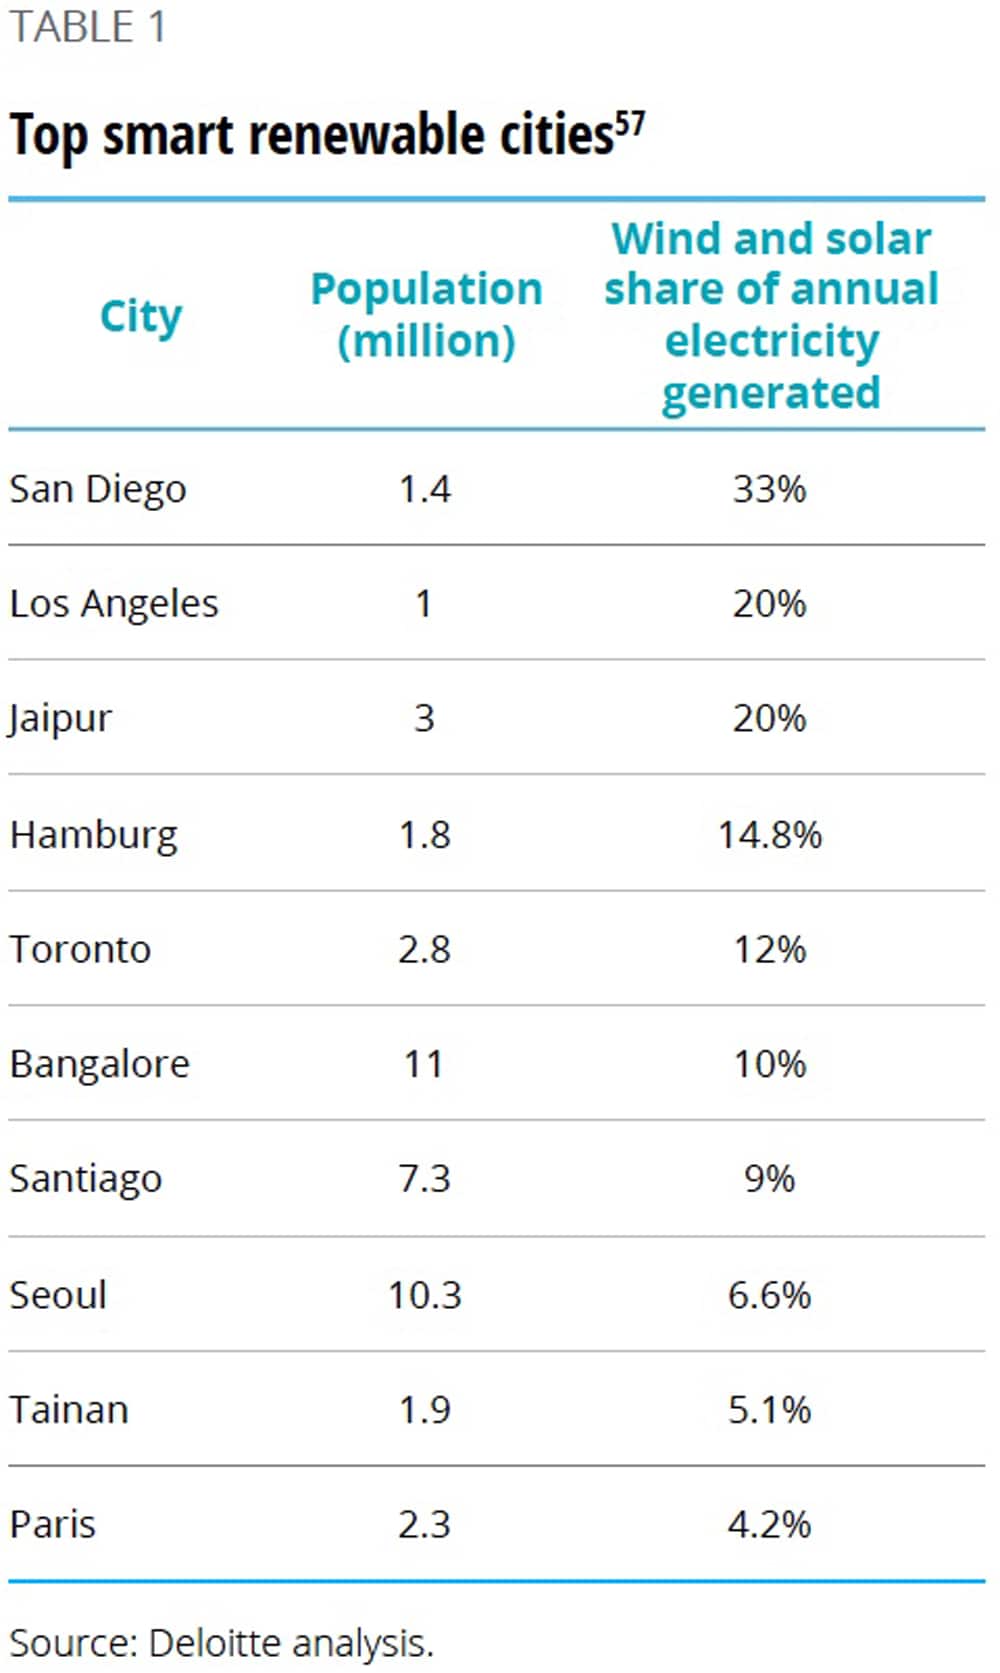 Top smart renewable cities